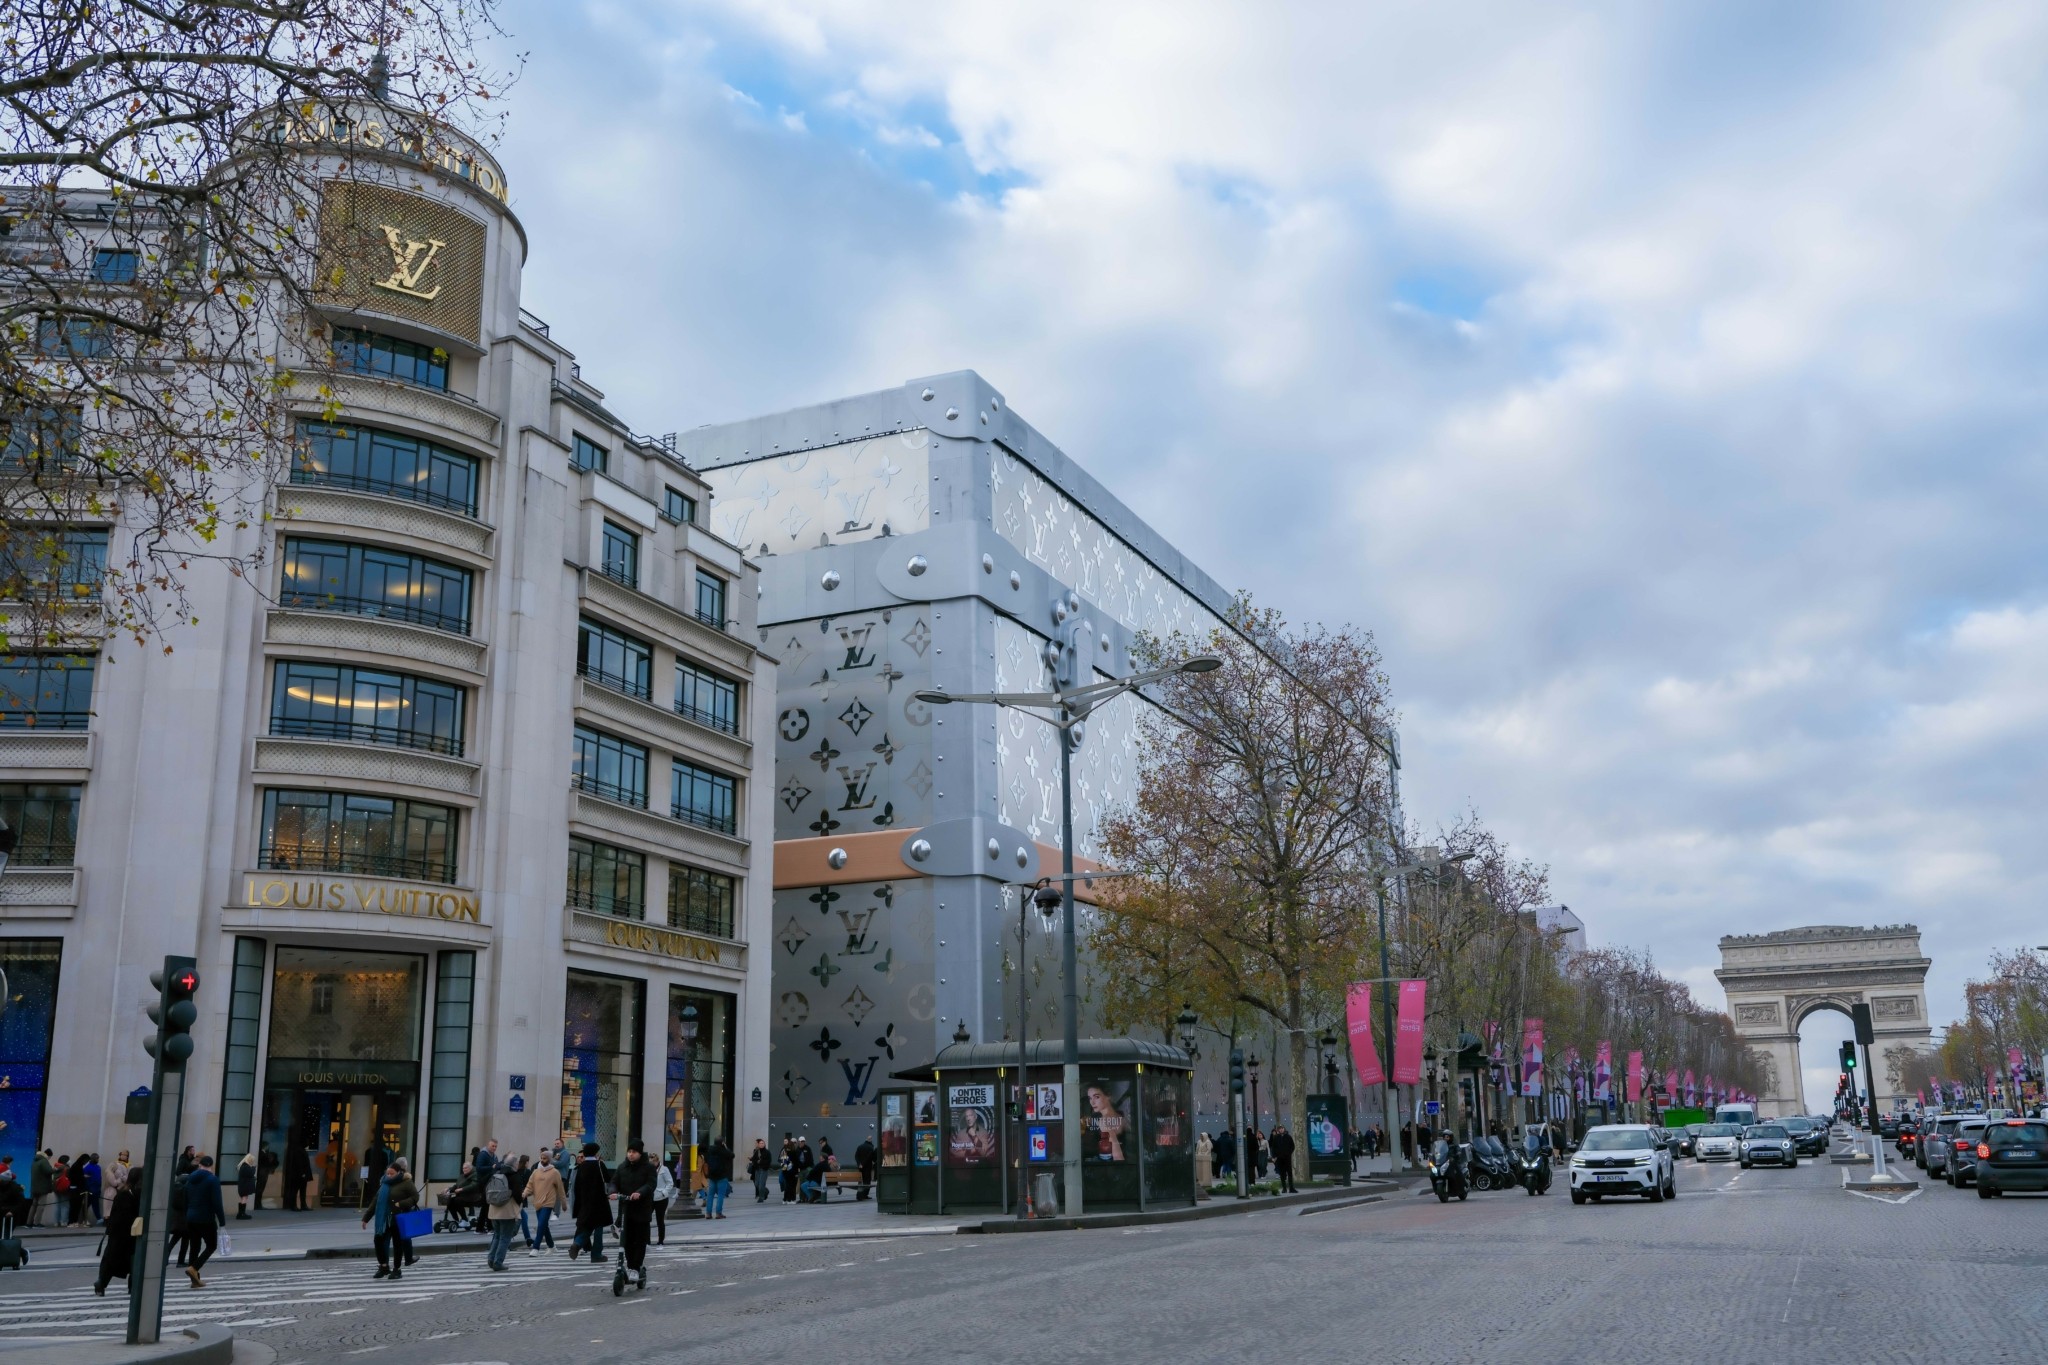 Η Louis Vuitton ανοίγει ξενοδοχείο στο Παρίσι το 2026